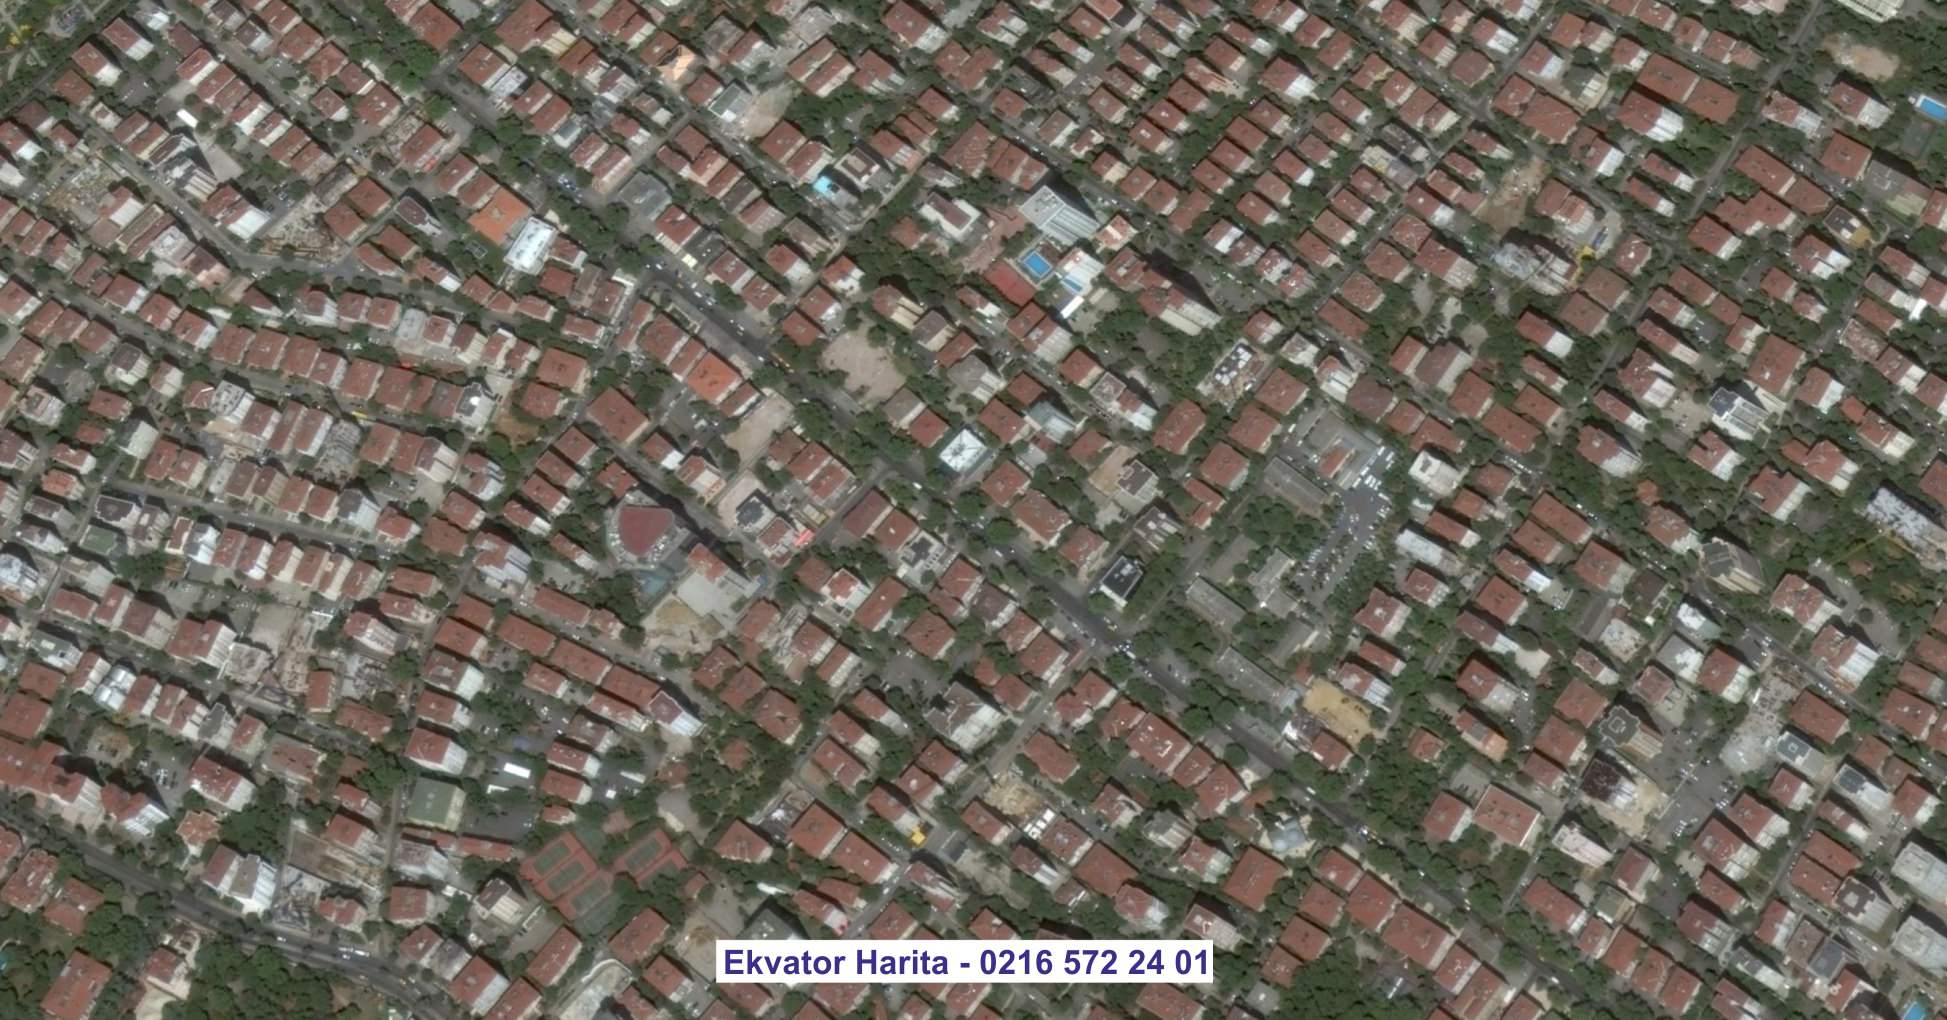 Düzce Uydu Görüntüsü Örnek Fotoğrafı